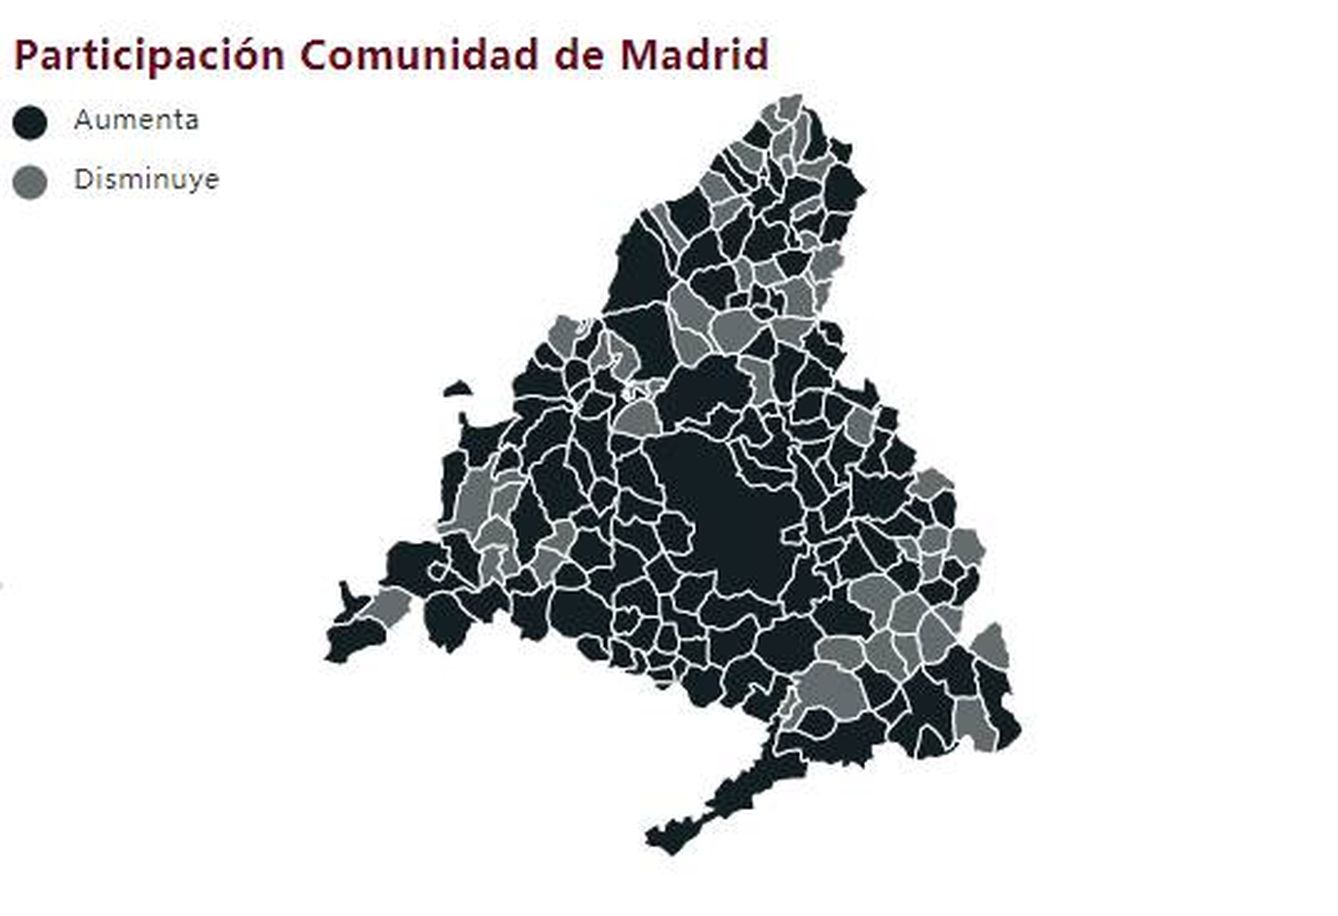 Participación en la Comunidad de Madrid a las 13 horas.